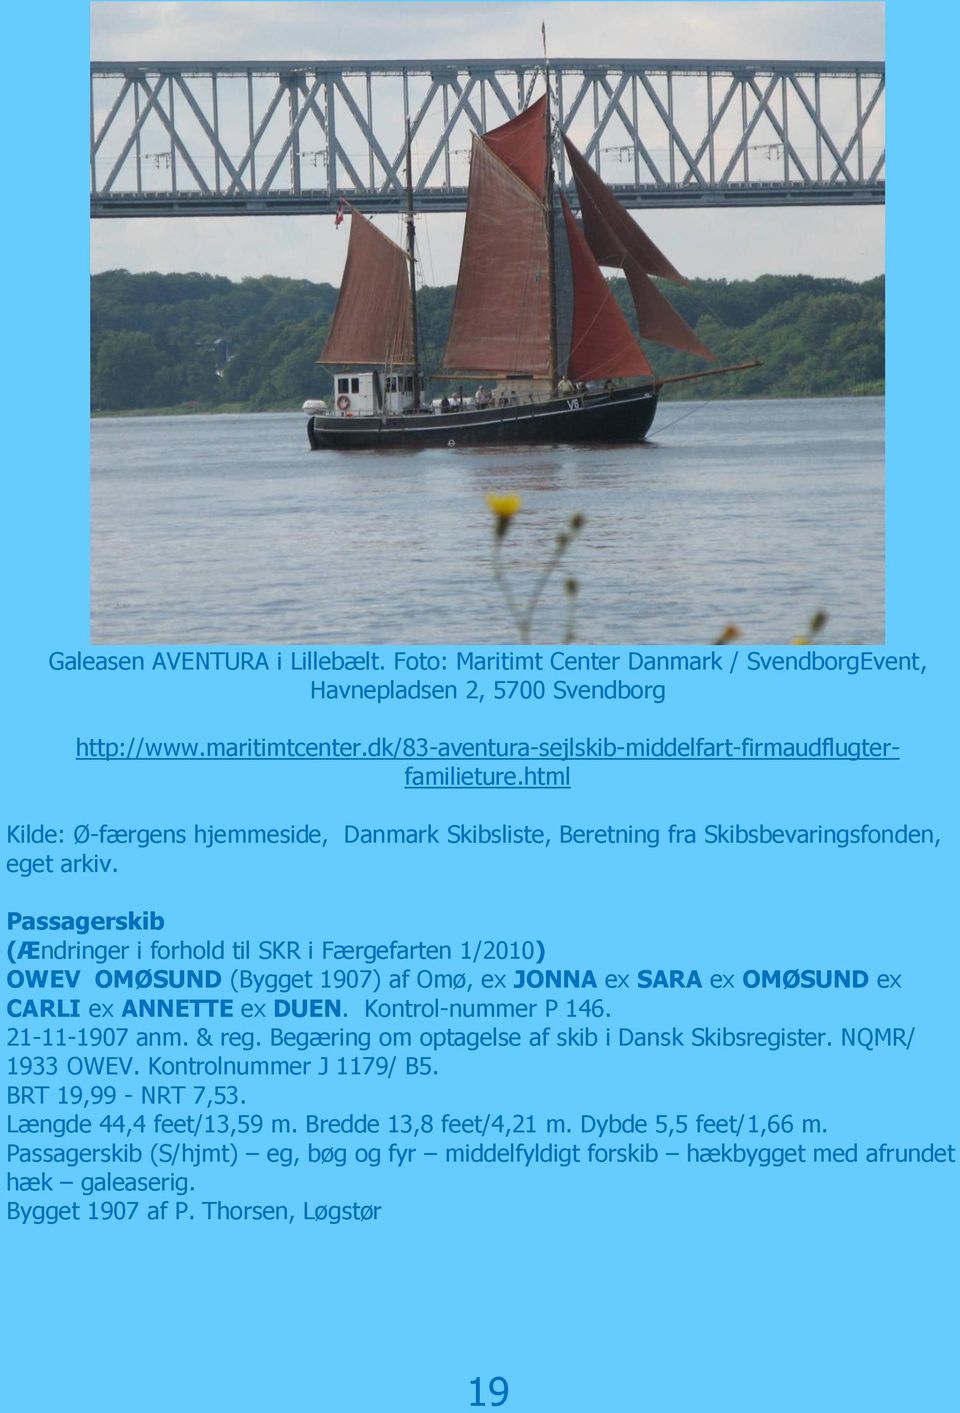 Passagerskib (Ændringer i forhold til SKR i Færgefarten 1/2010) OWEV OMØSUND (Bygget 1907) af Omø, ex JONNA ex SARA ex OMØSUND ex CARLI ex ANNETTE ex DUEN. Kontrol-nummer P 146. 21-11-1907 anm. & reg.